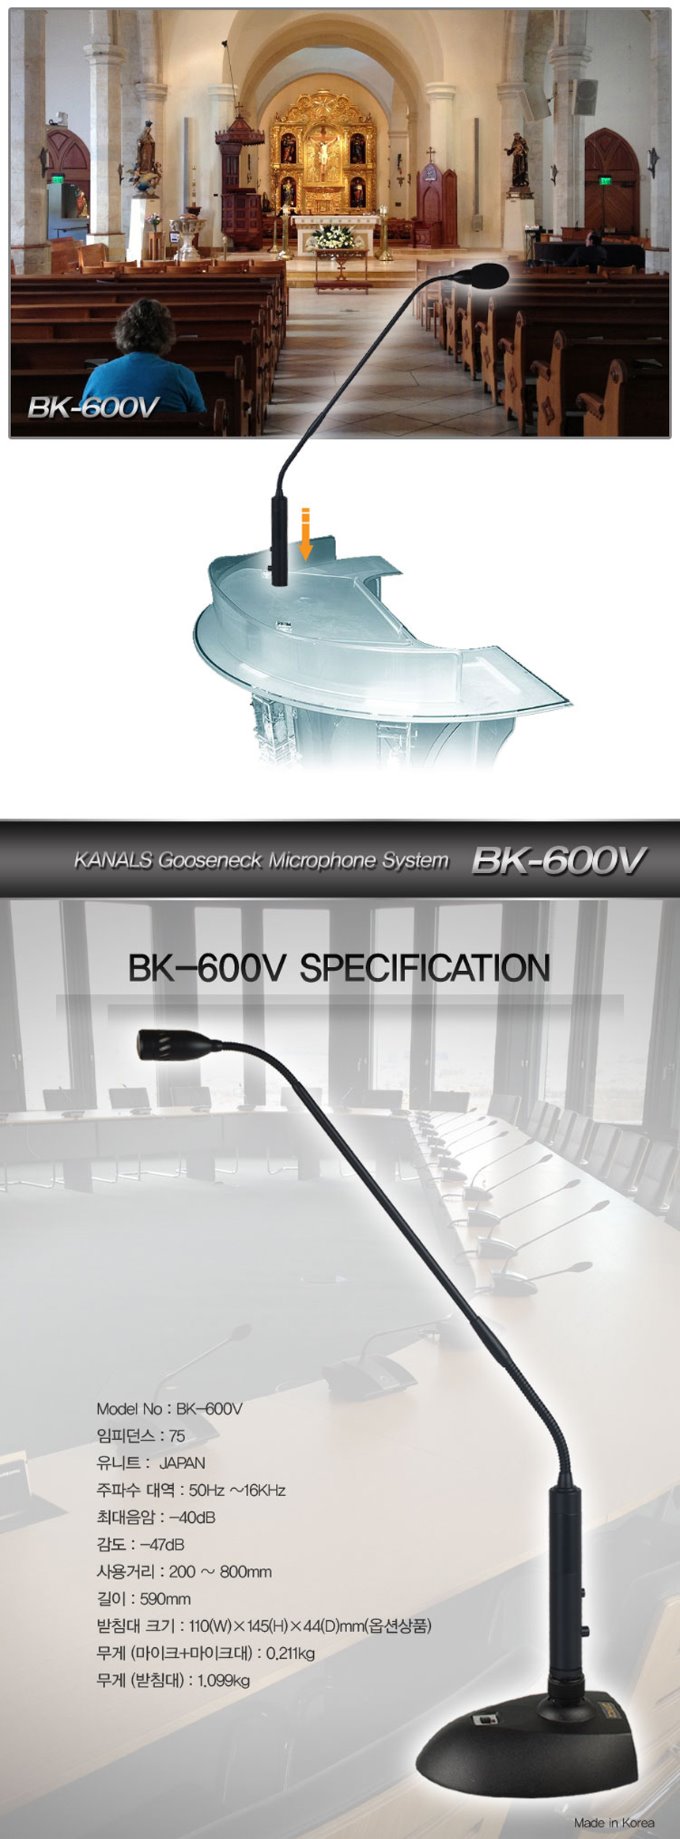 CBK-600V-4.jpg